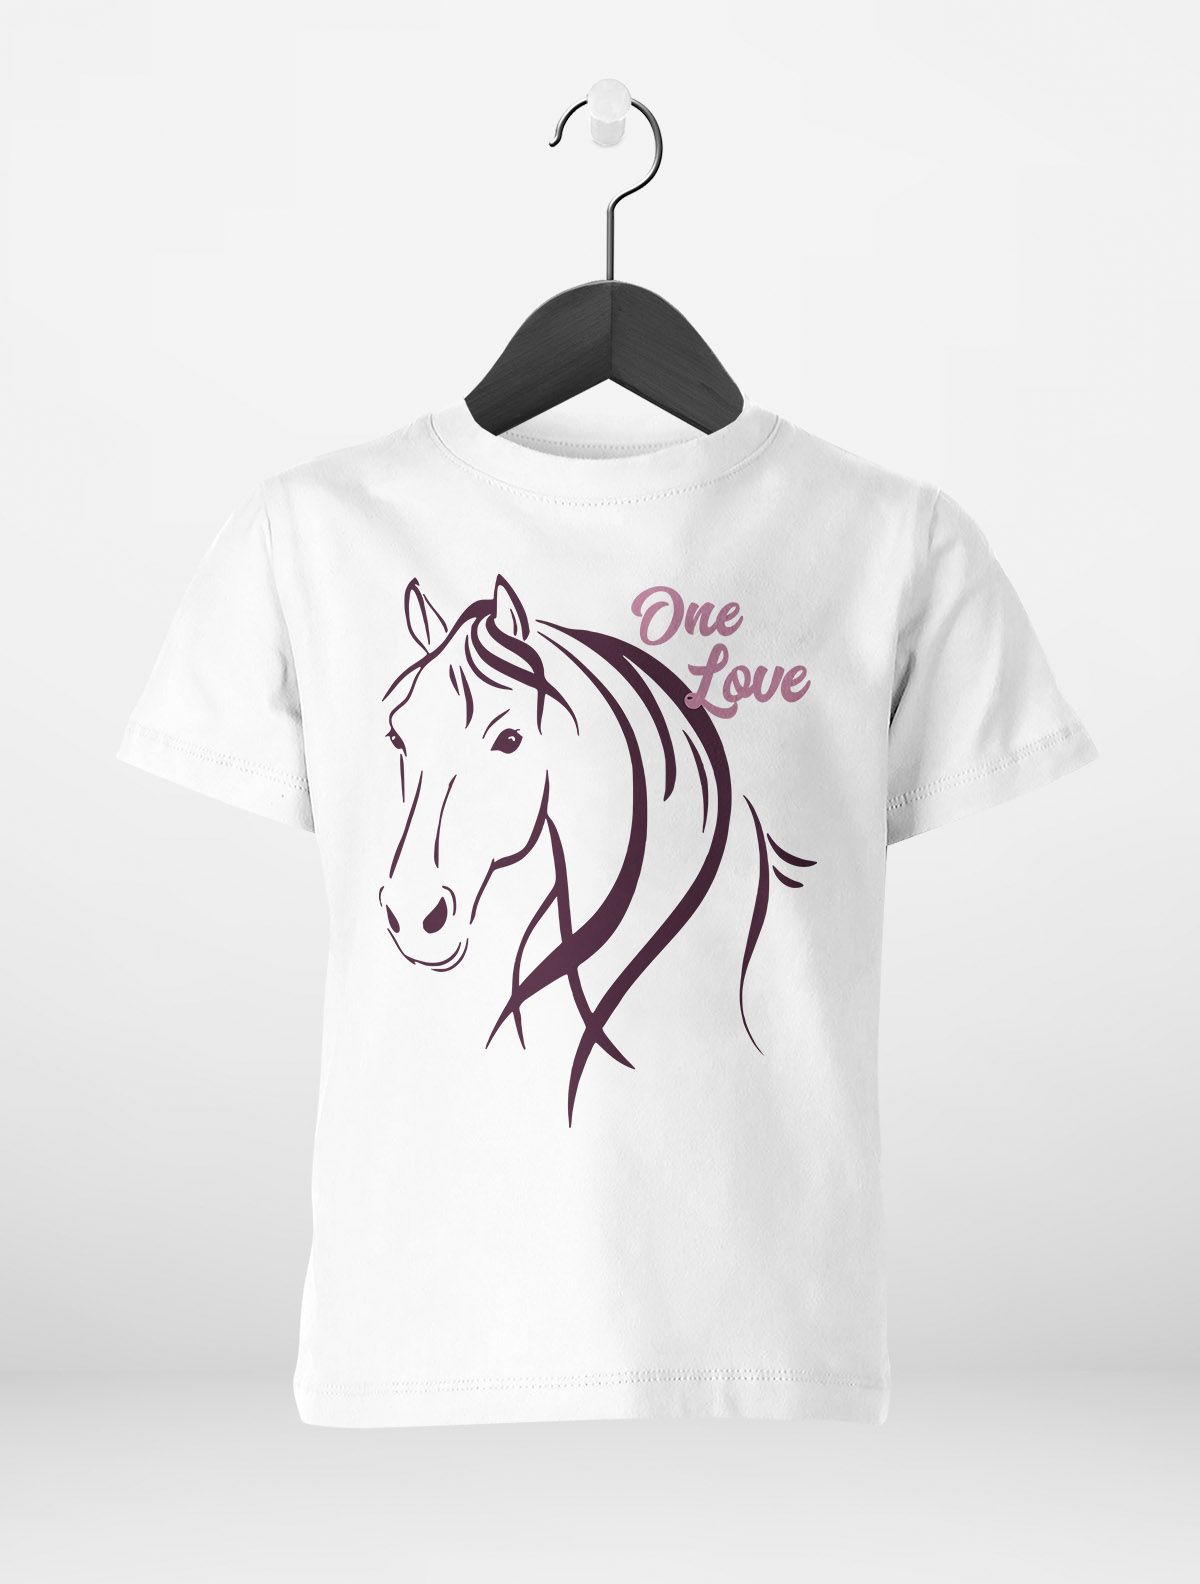 Pferdeliebhaber Kinder Mädchen Mädchen Geschenk T-Shirt | Pferde-Motiv für eBay Reiten